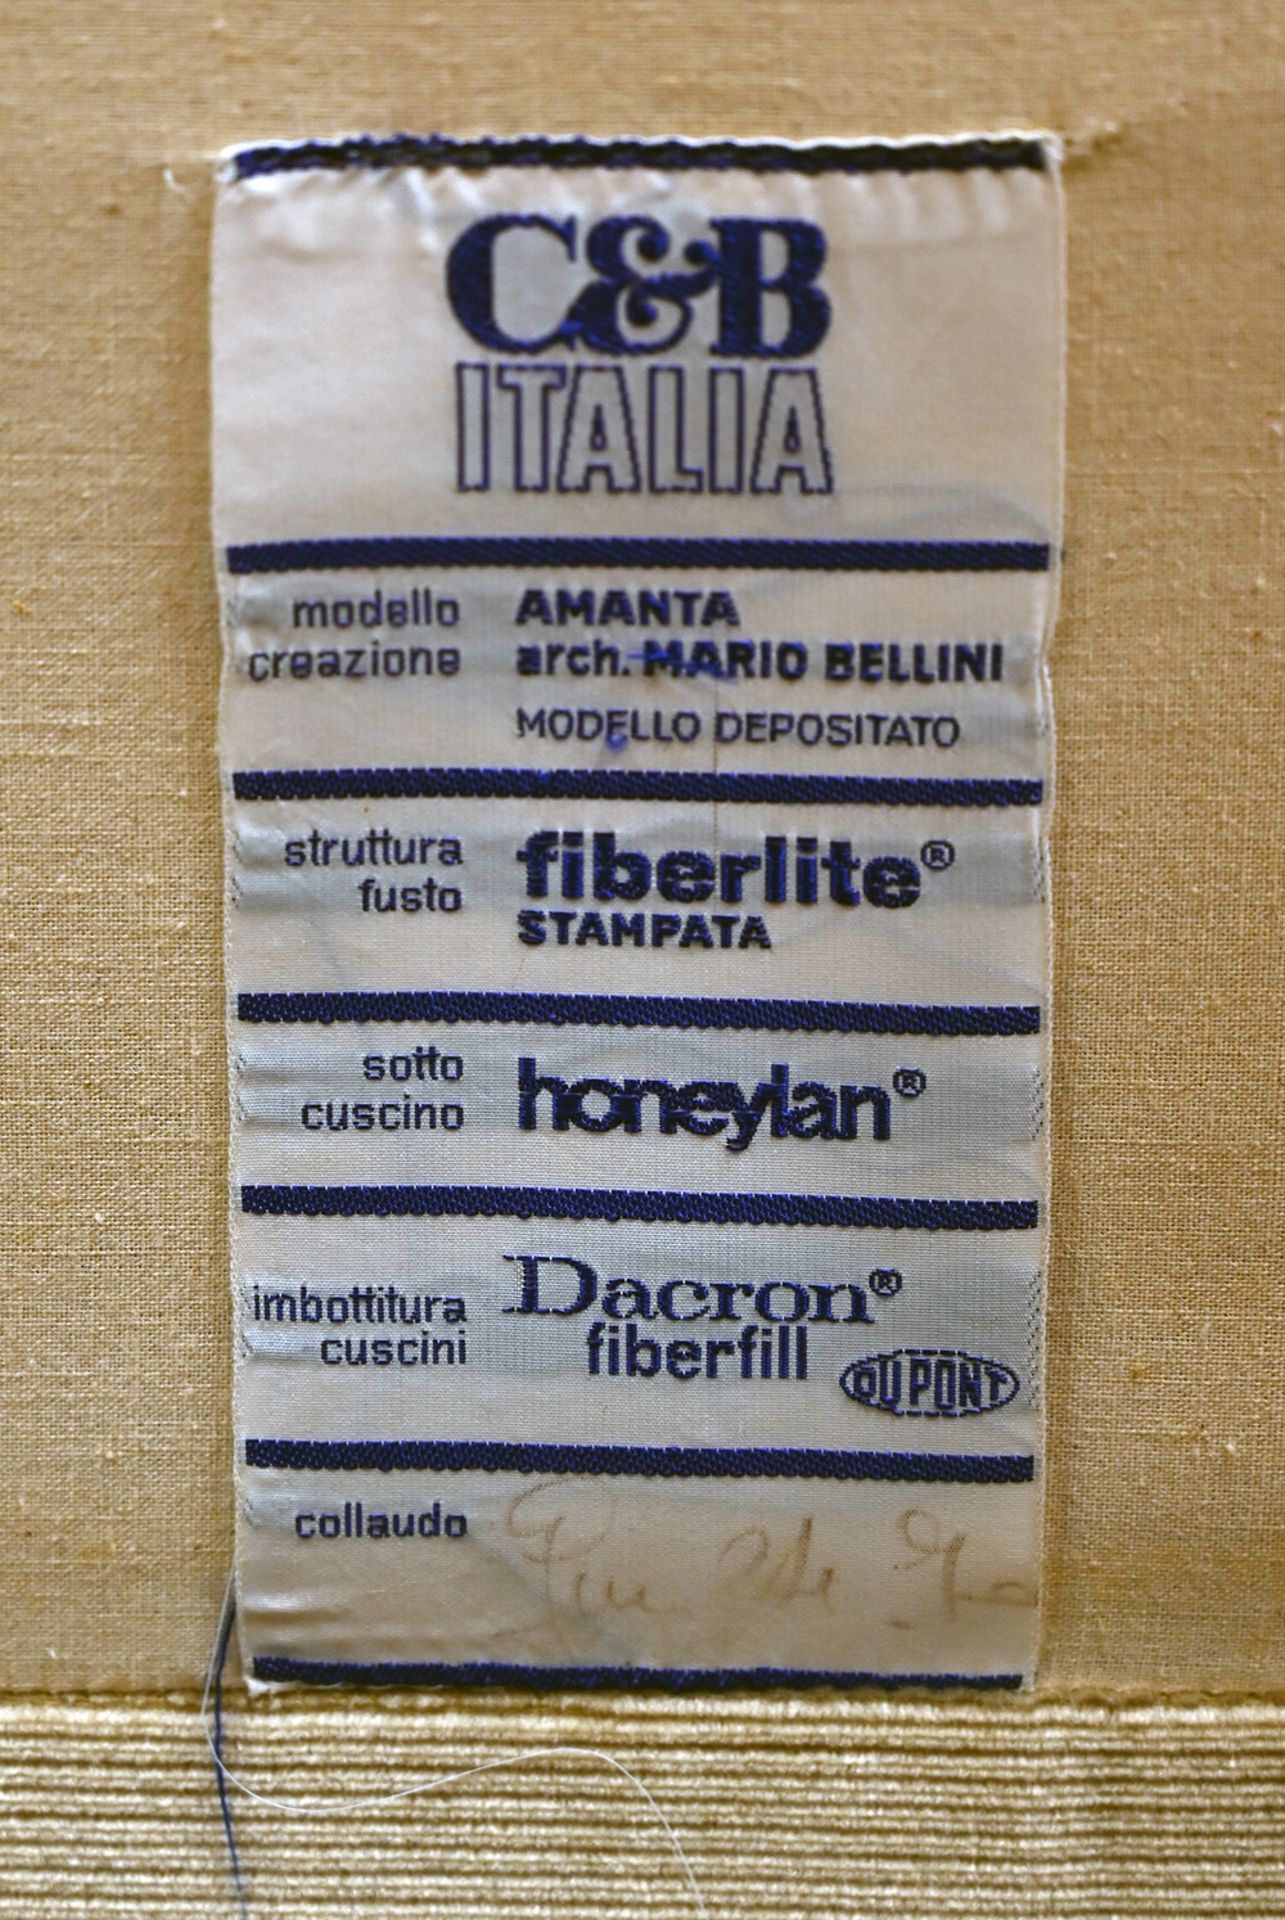 7 Sessel unters. bez. C&B ITALIA "Amanta" Design: Mario BELLINI wohl 1970er Jahre, je Hartplastikver - Bild 2 aus 3